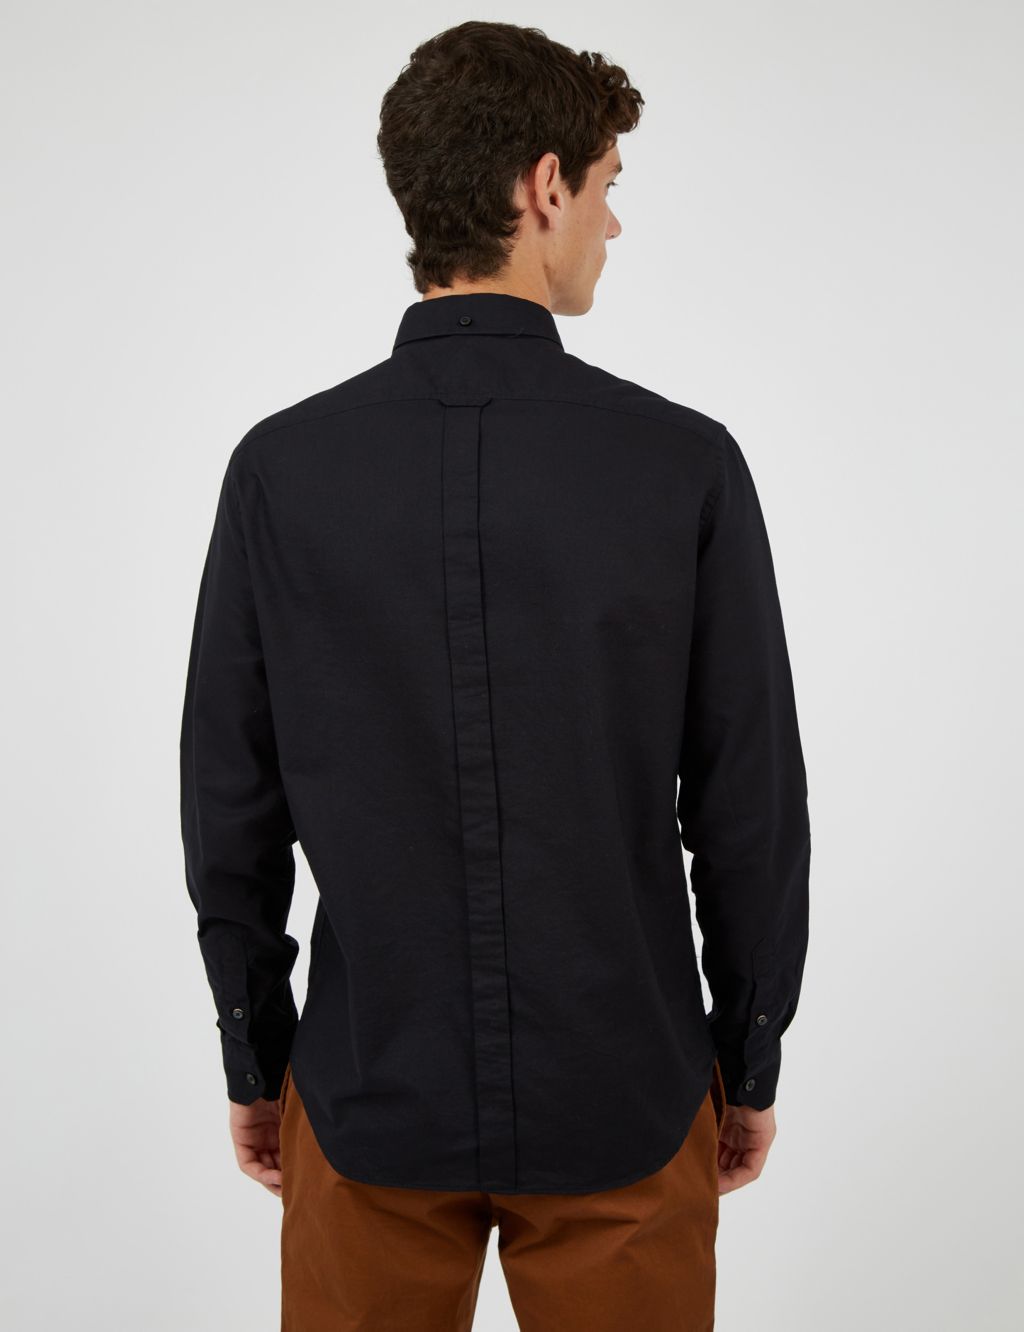 Pure Cotton Oxford Shirt | Ben Sherman | M&S